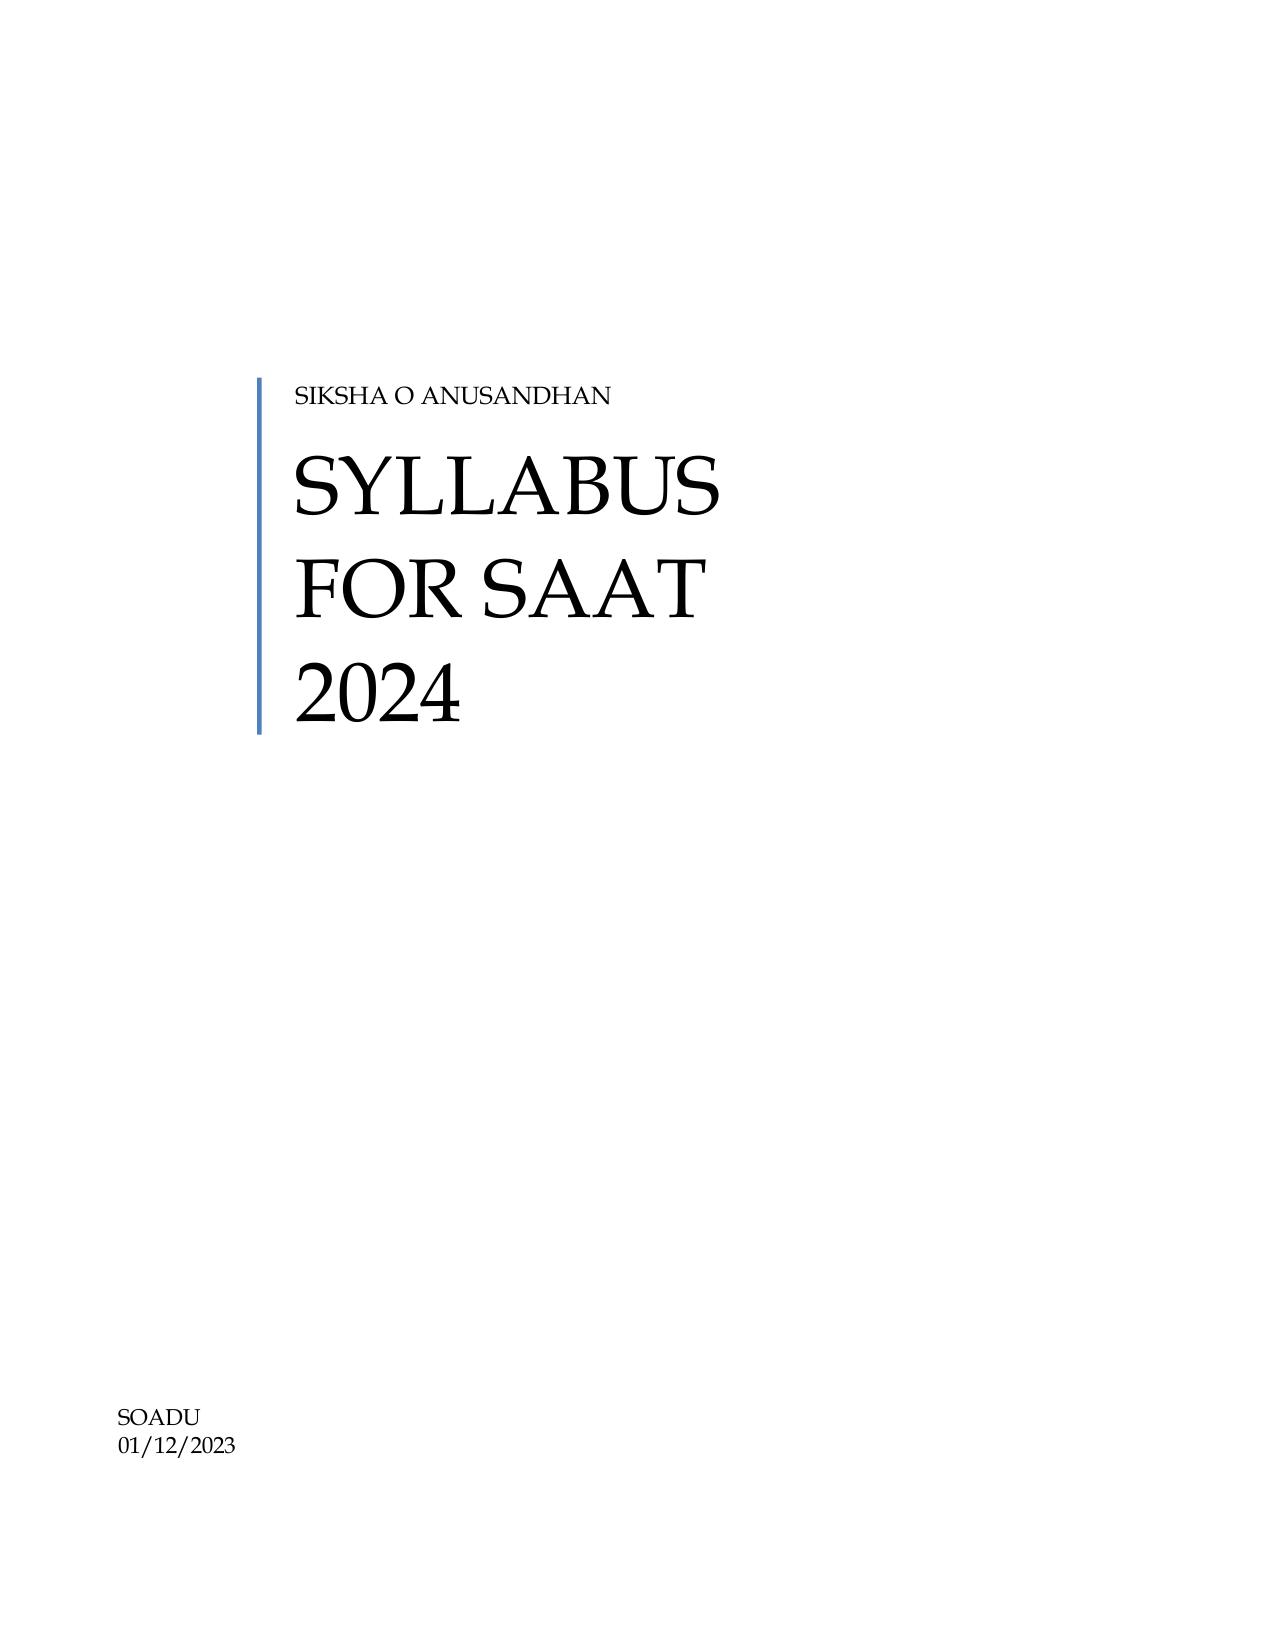 SAAT Syllabus - Page 1